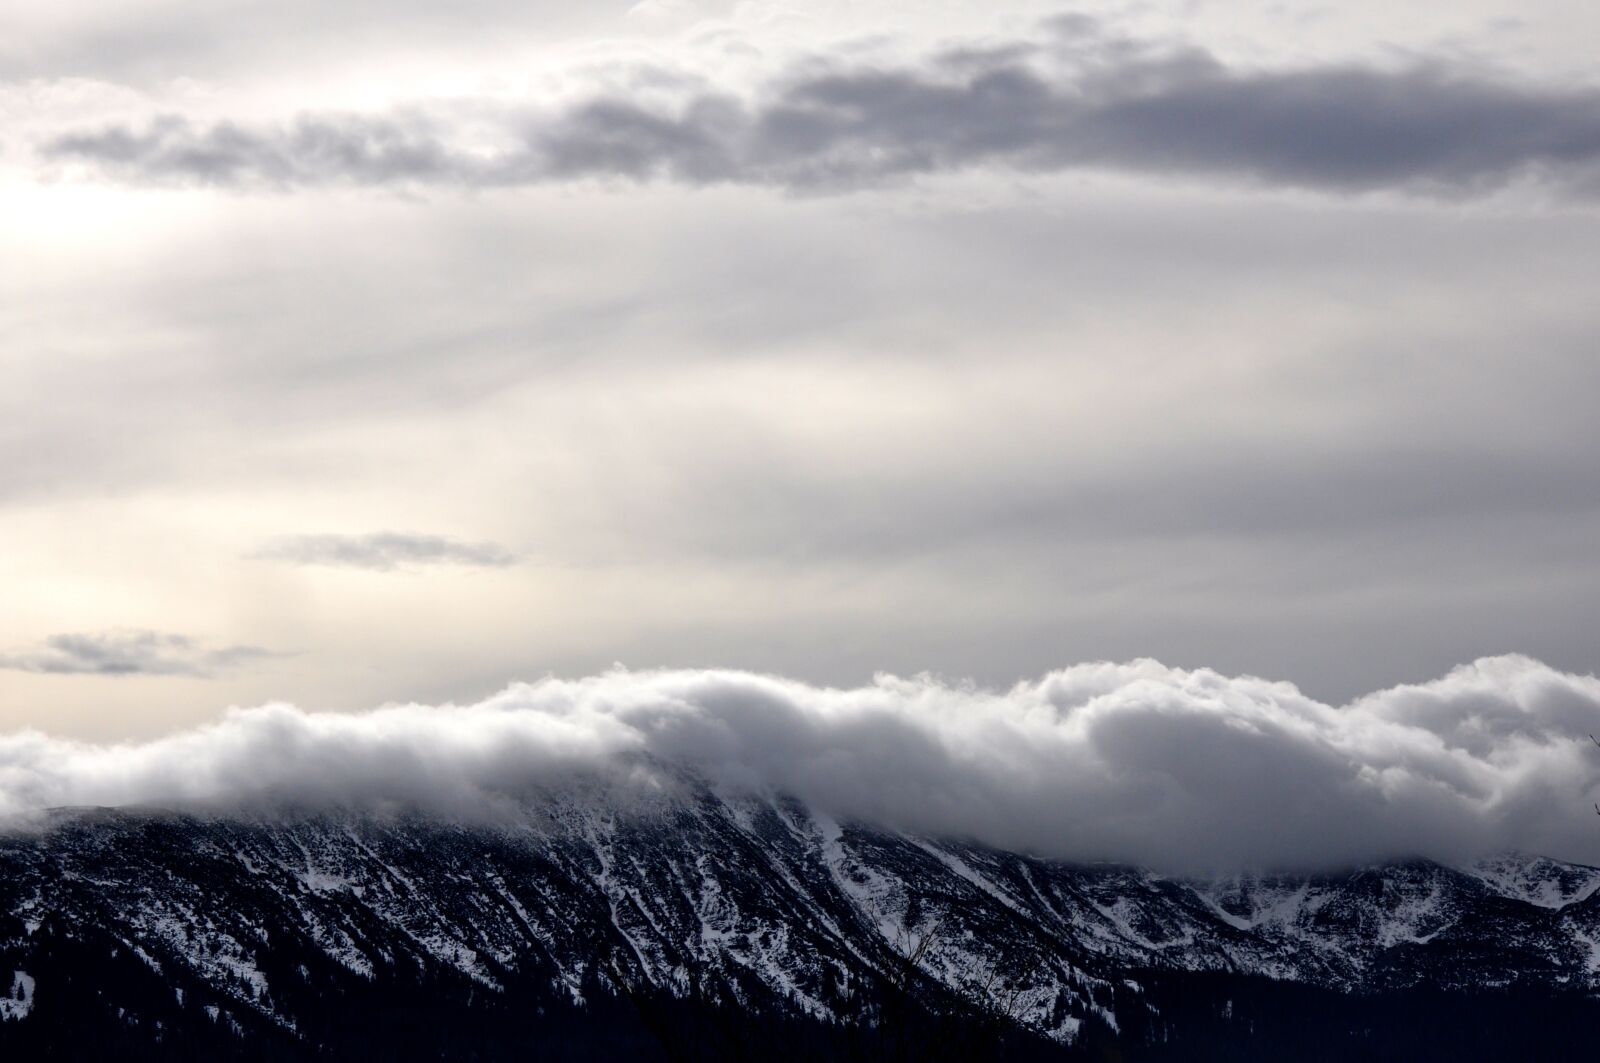 Nikon D90 sample photo. Mountains, clouds, landscape photography